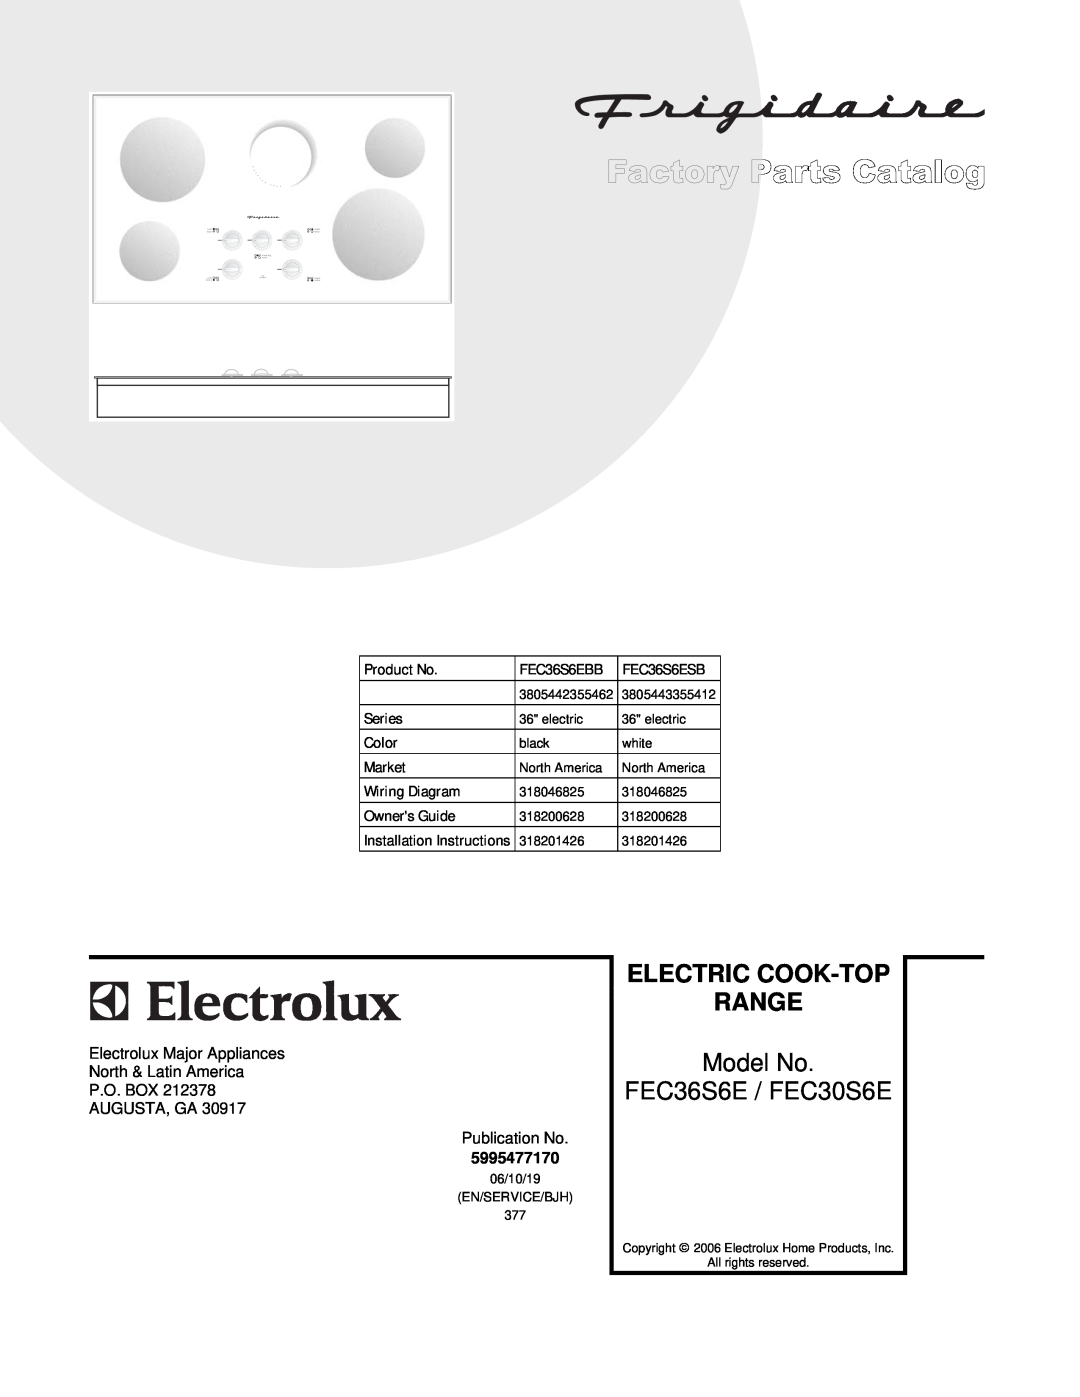 Electrolux FEC36S6E / FEC30S6E installation instructions Product No, FEC36S6EBB, FEC36S6ESB, Series, Color, Market, Range 